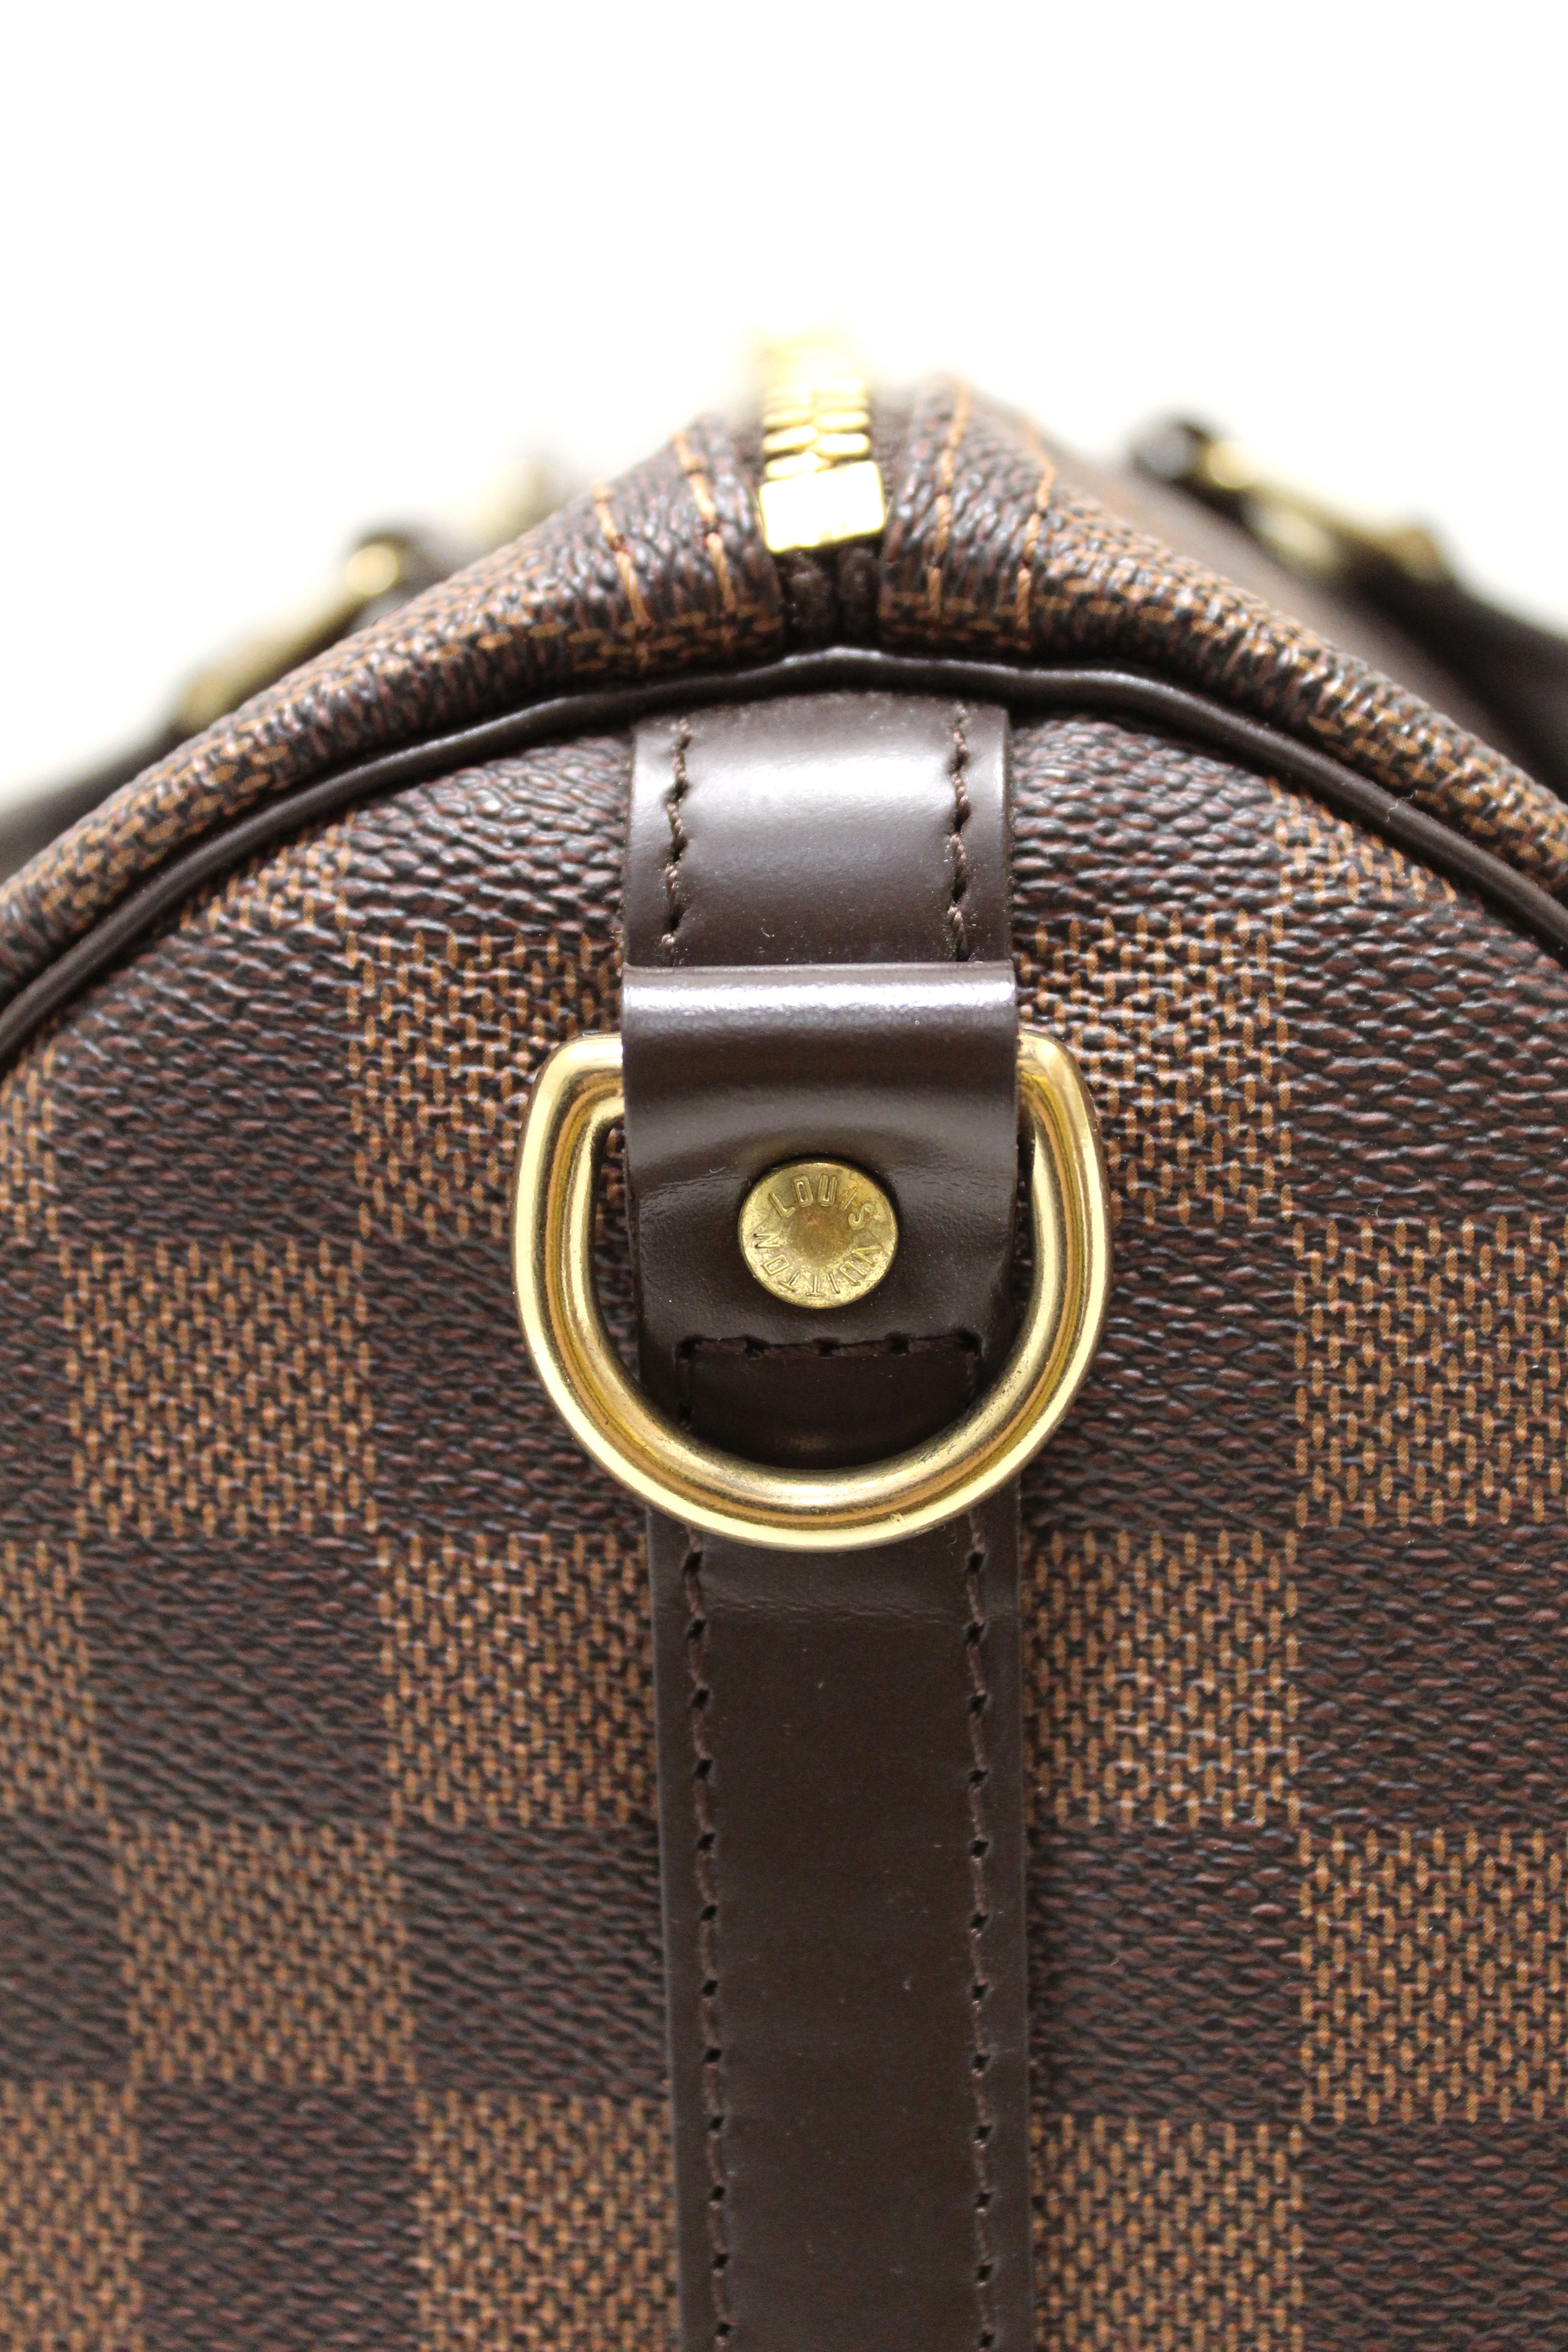 Authentic Louis Vuitton Damier Ebene Speedy 35 Bandouliere Bag